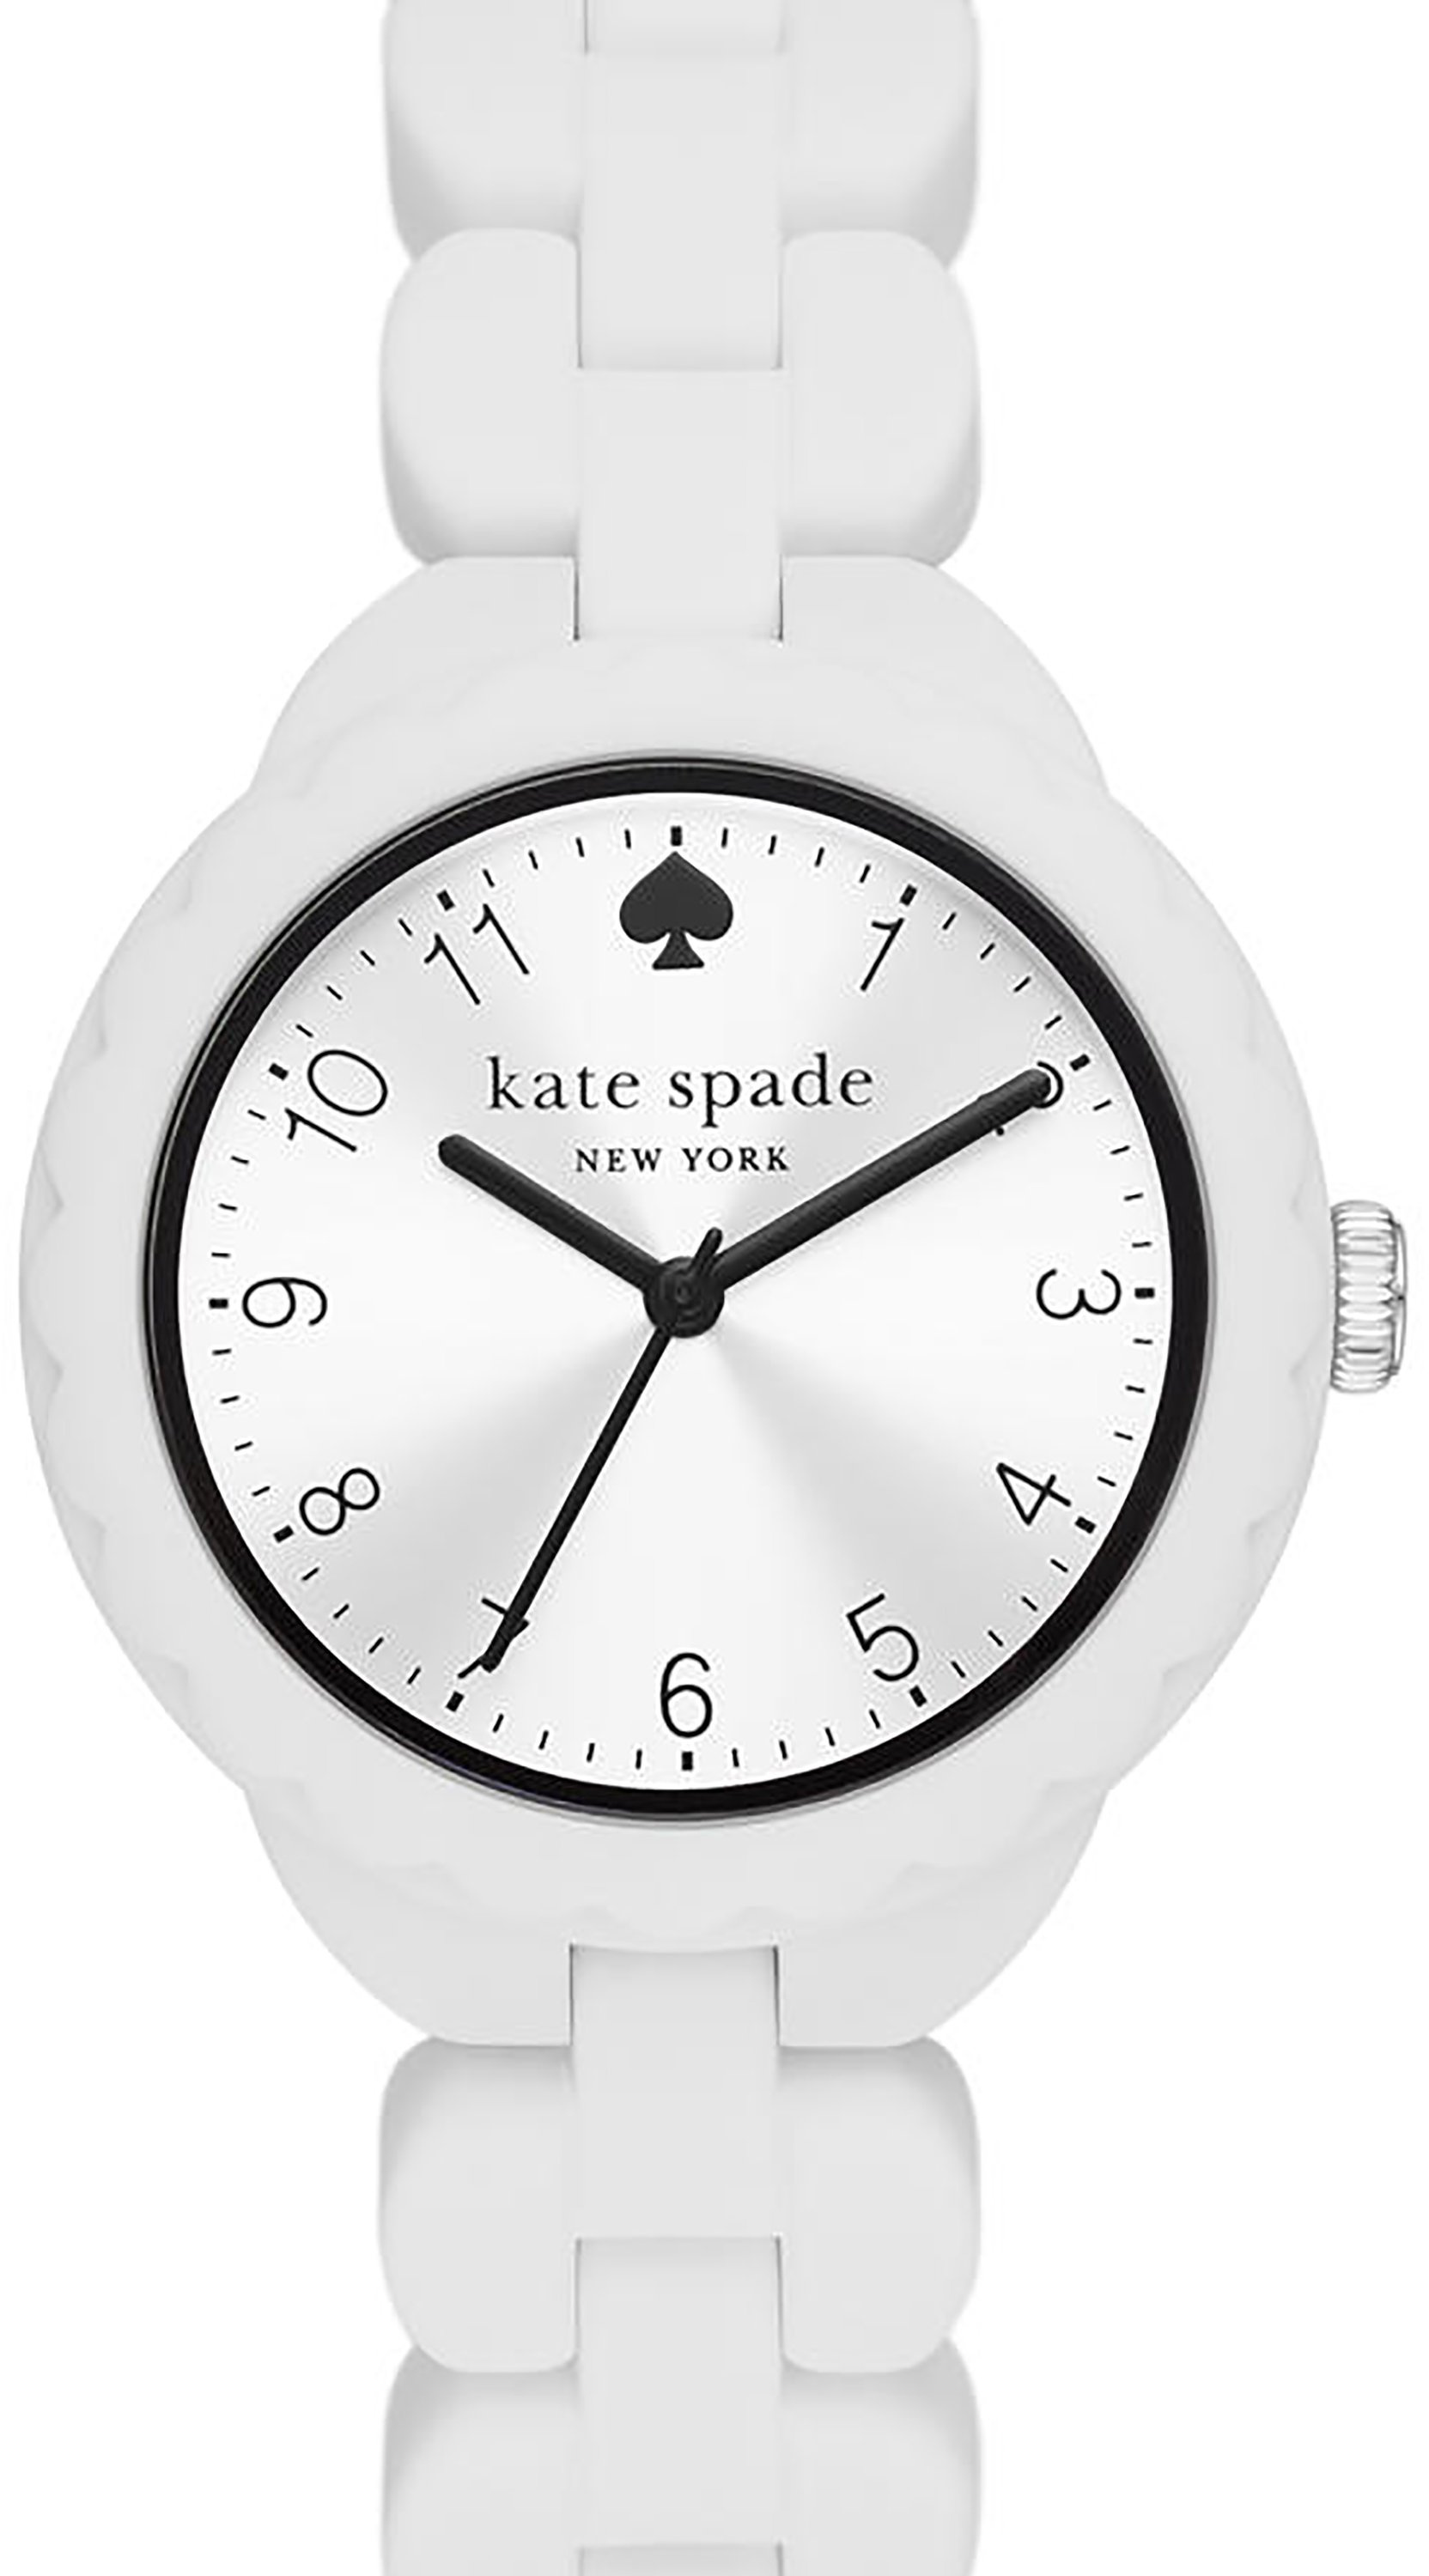 Силиконовые часы Morningside с тремя стрелками — KSW1794 Kate Spade New York